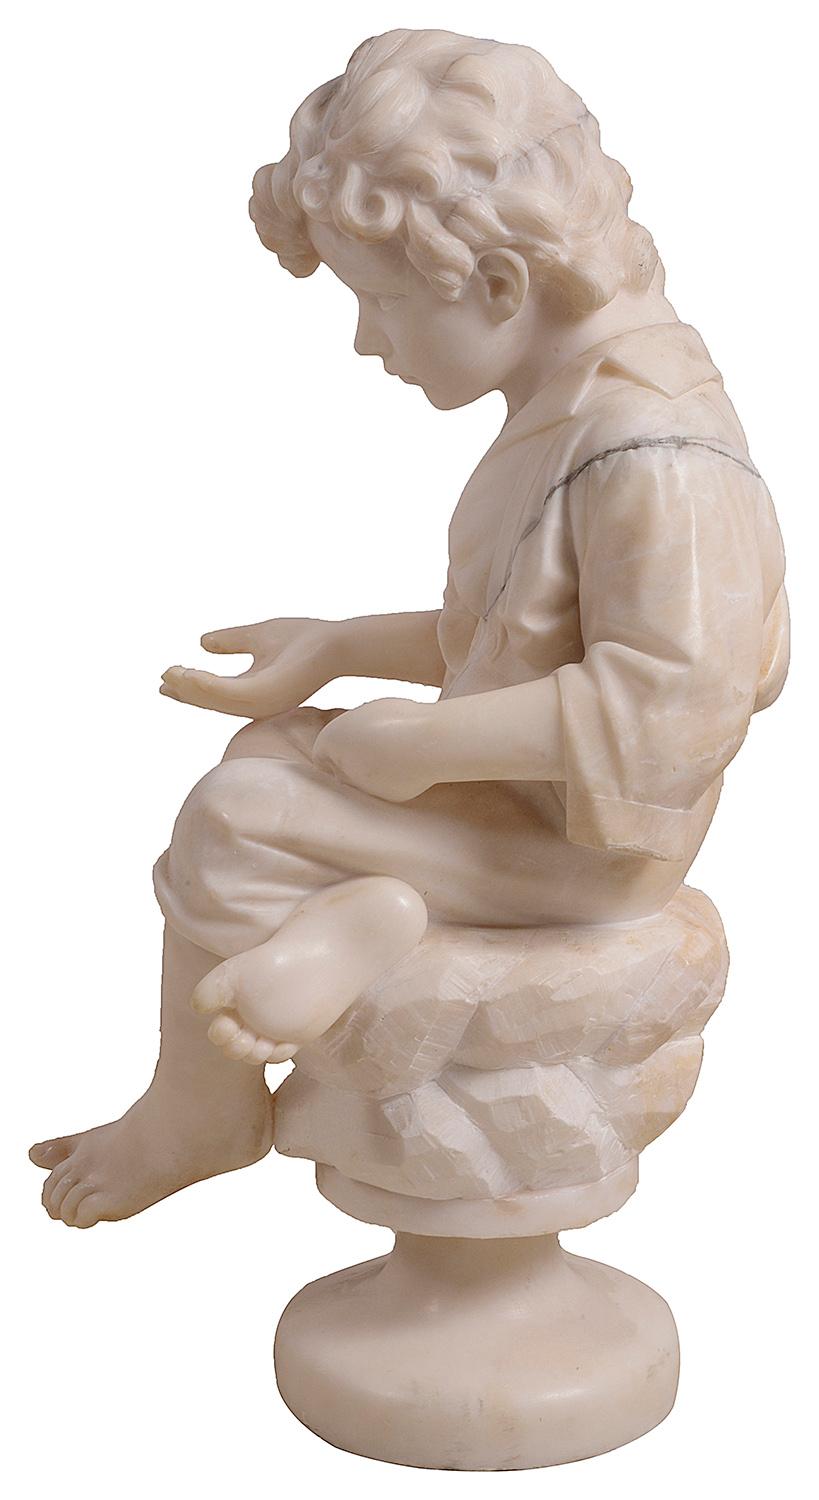 Statue en marbre sculpté de bonne qualité, datant de la fin du 19e siècle, représentant un jeune mendiant assis en tailleur sur un rocher.
Signé : A. Goli. Mesures : 25.5